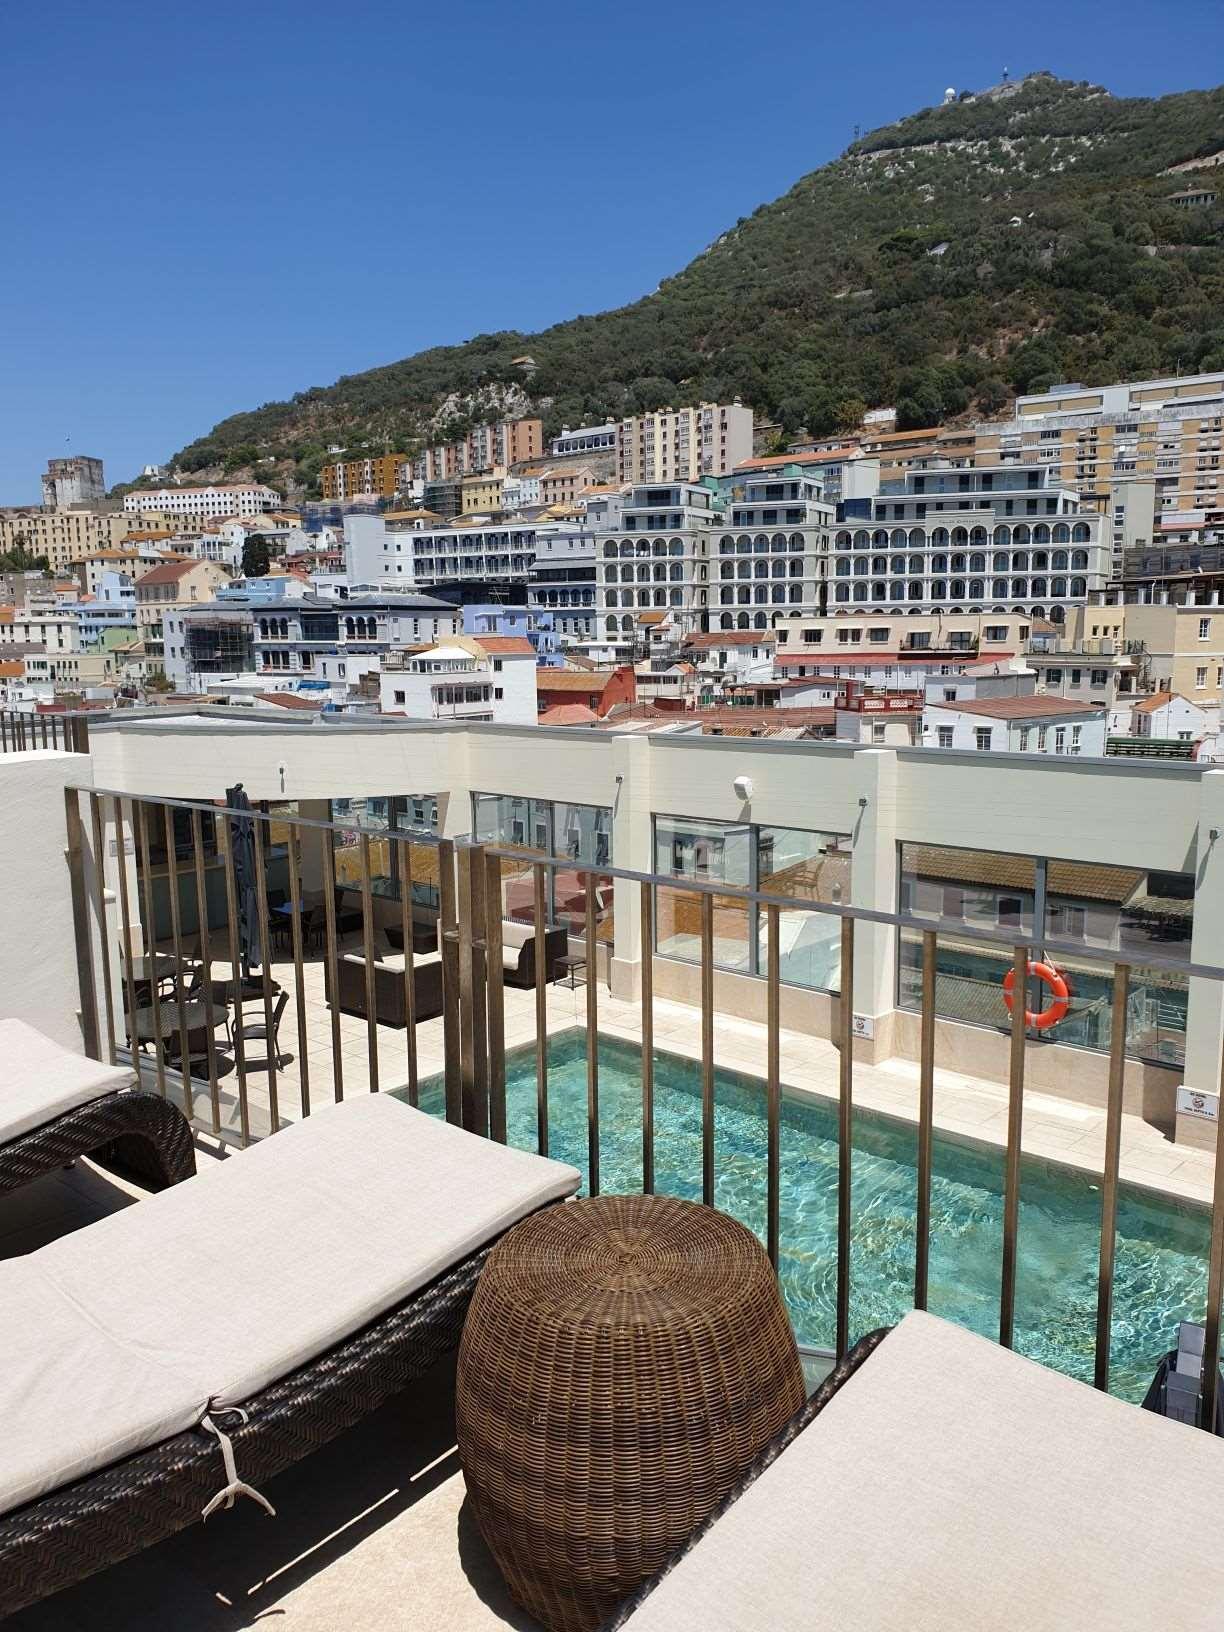 The Eliott Hotel Gibraltar